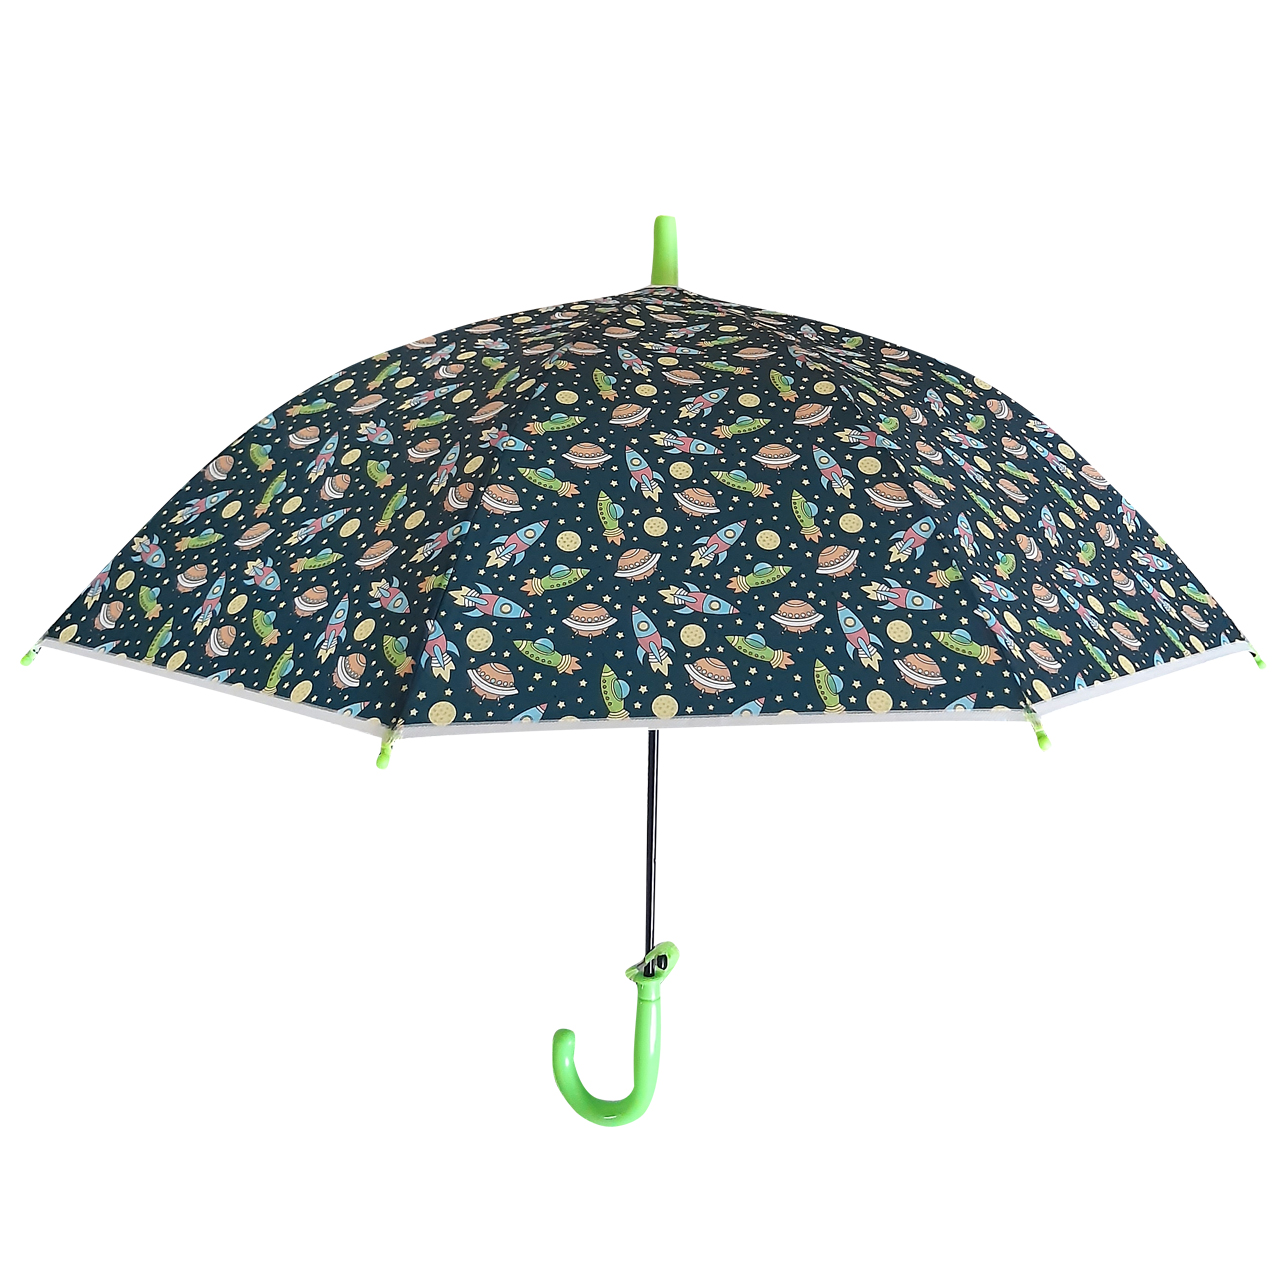  چتر بچگانه کد 205